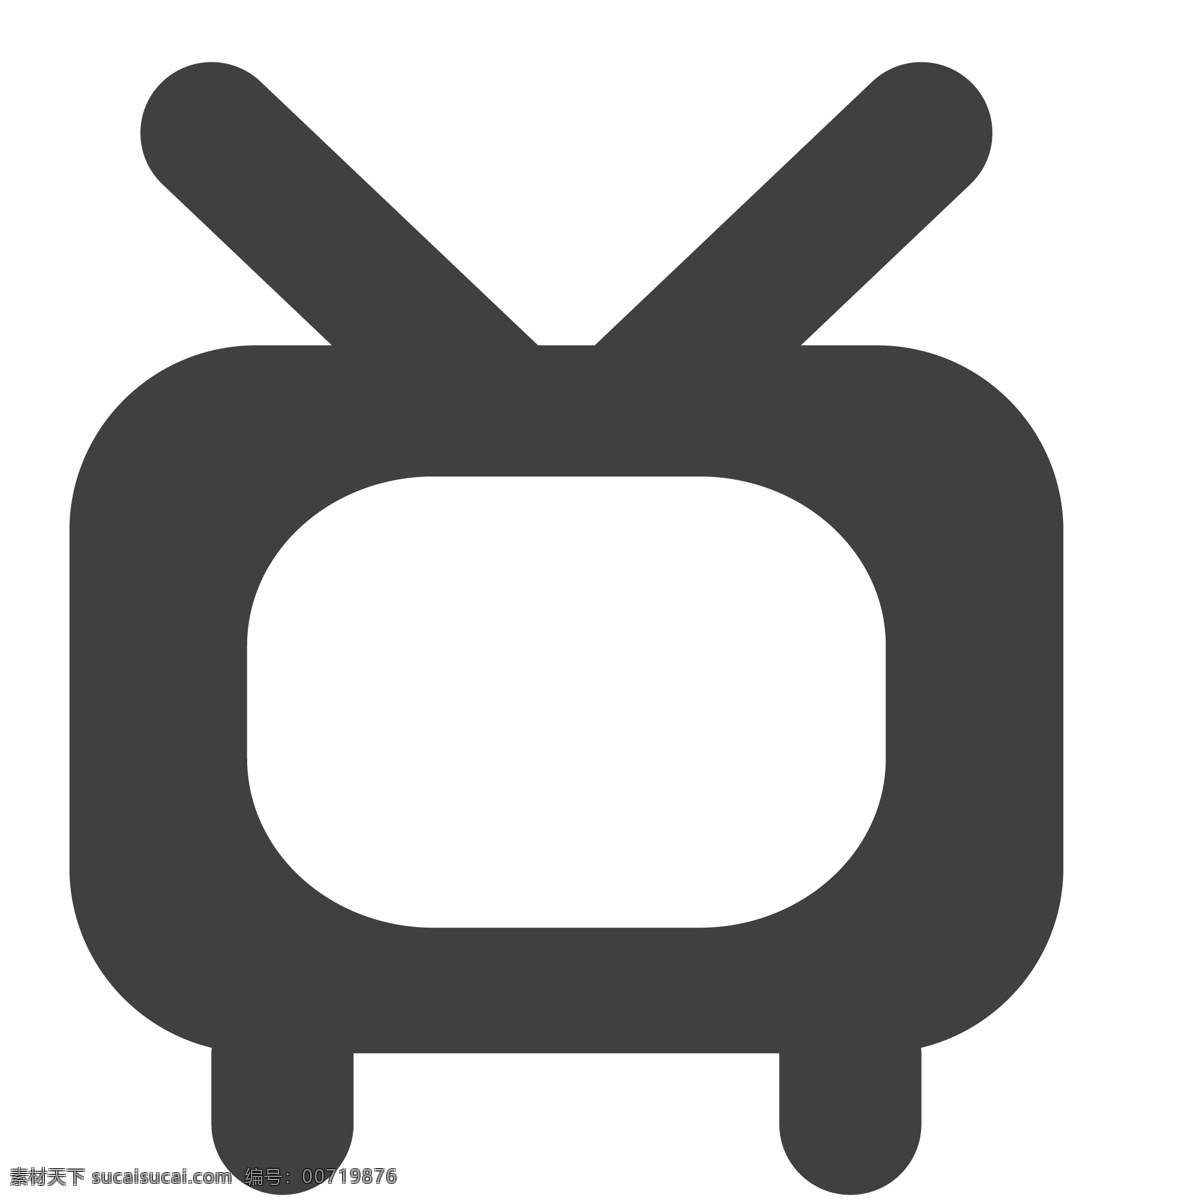 老旧的电视机 电视机 电视 天线 生活图标 卡通图标 黑色的图标 手机图标 智能图标设计